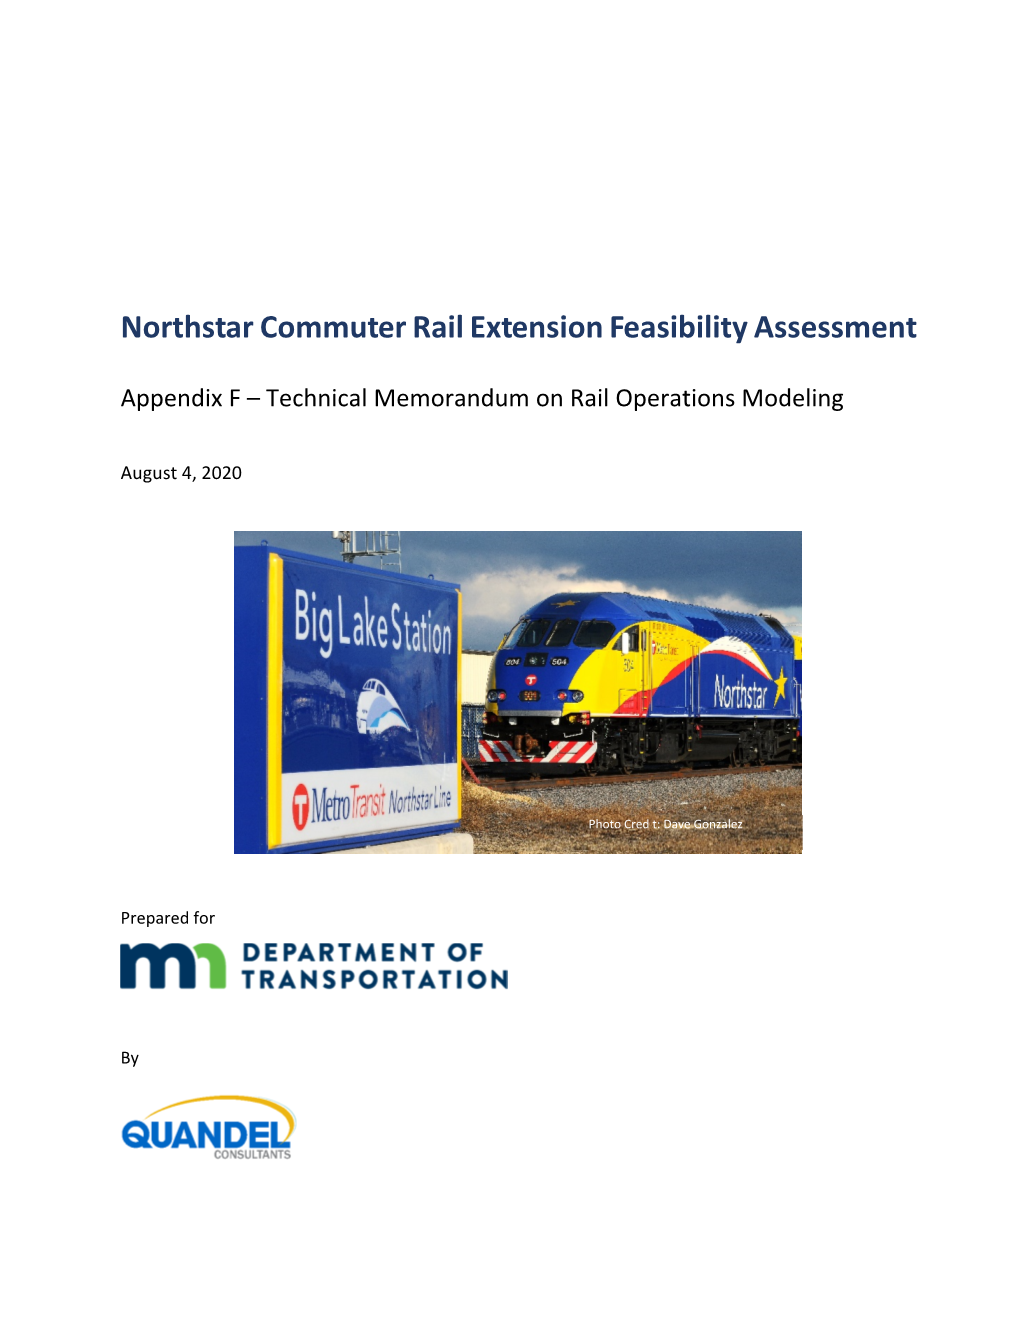 Appendix F – Technical Memorandum on Rail Operations Modeling